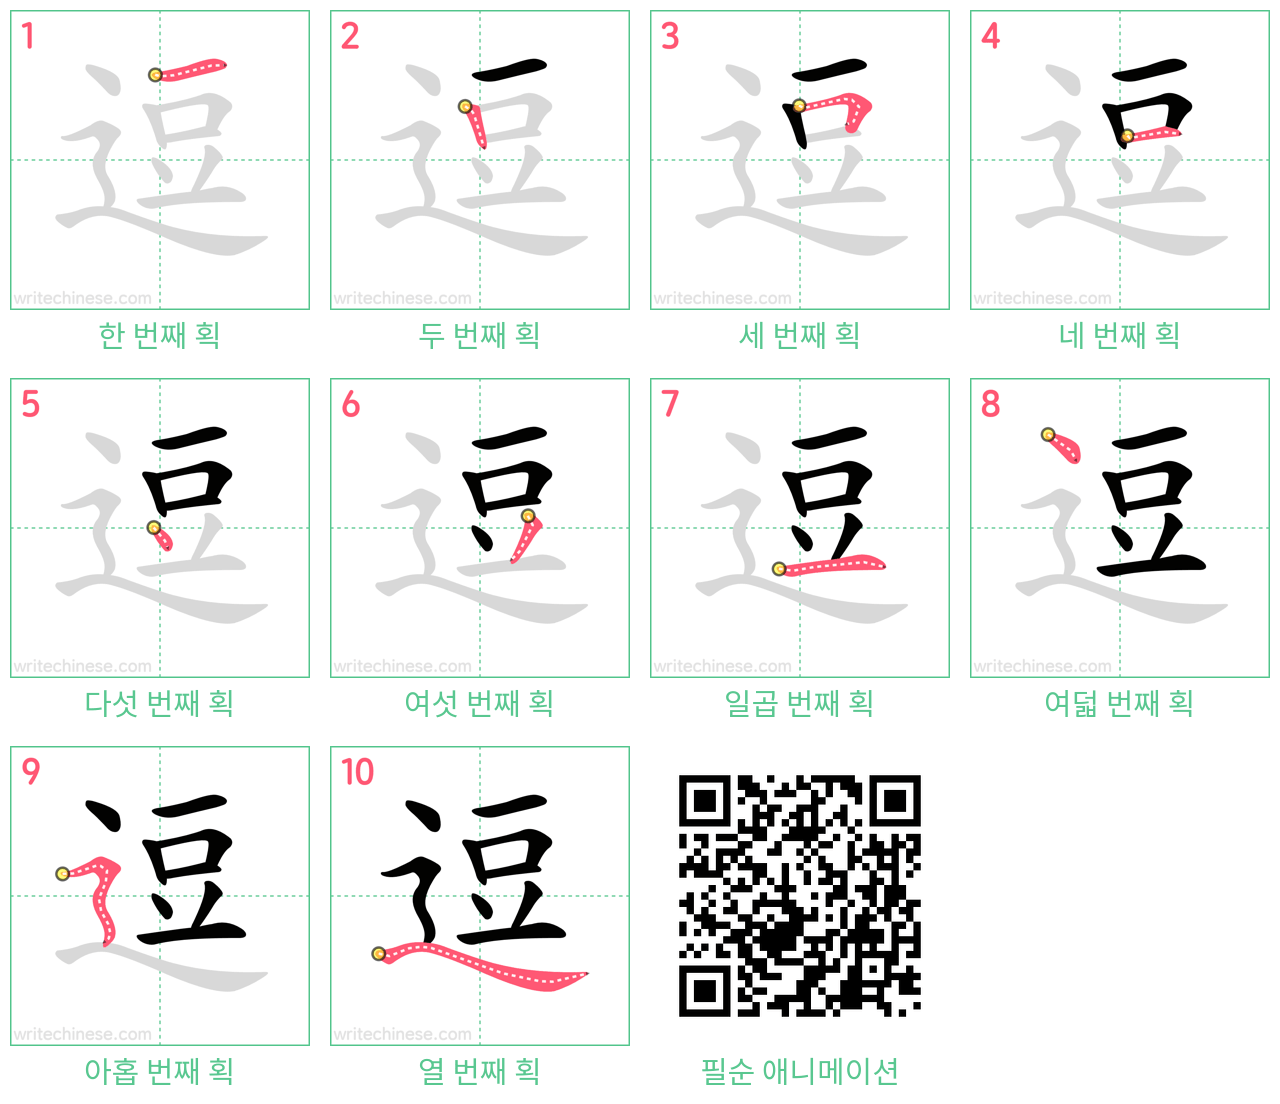 逗 step-by-step stroke order diagrams